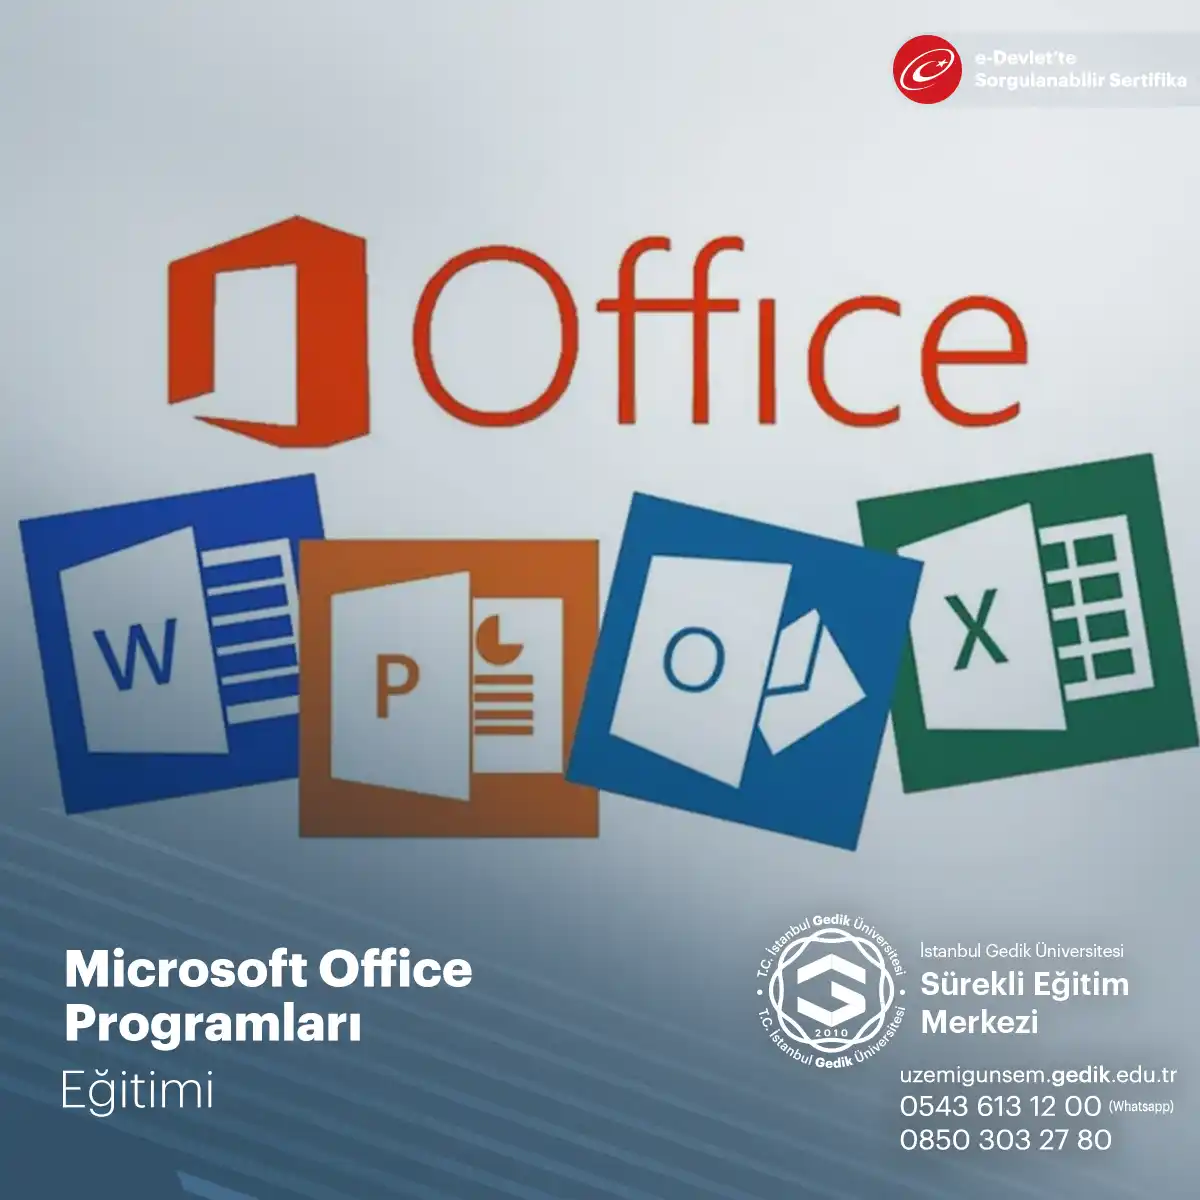 Microsoft Office Programları Sertifika Programı